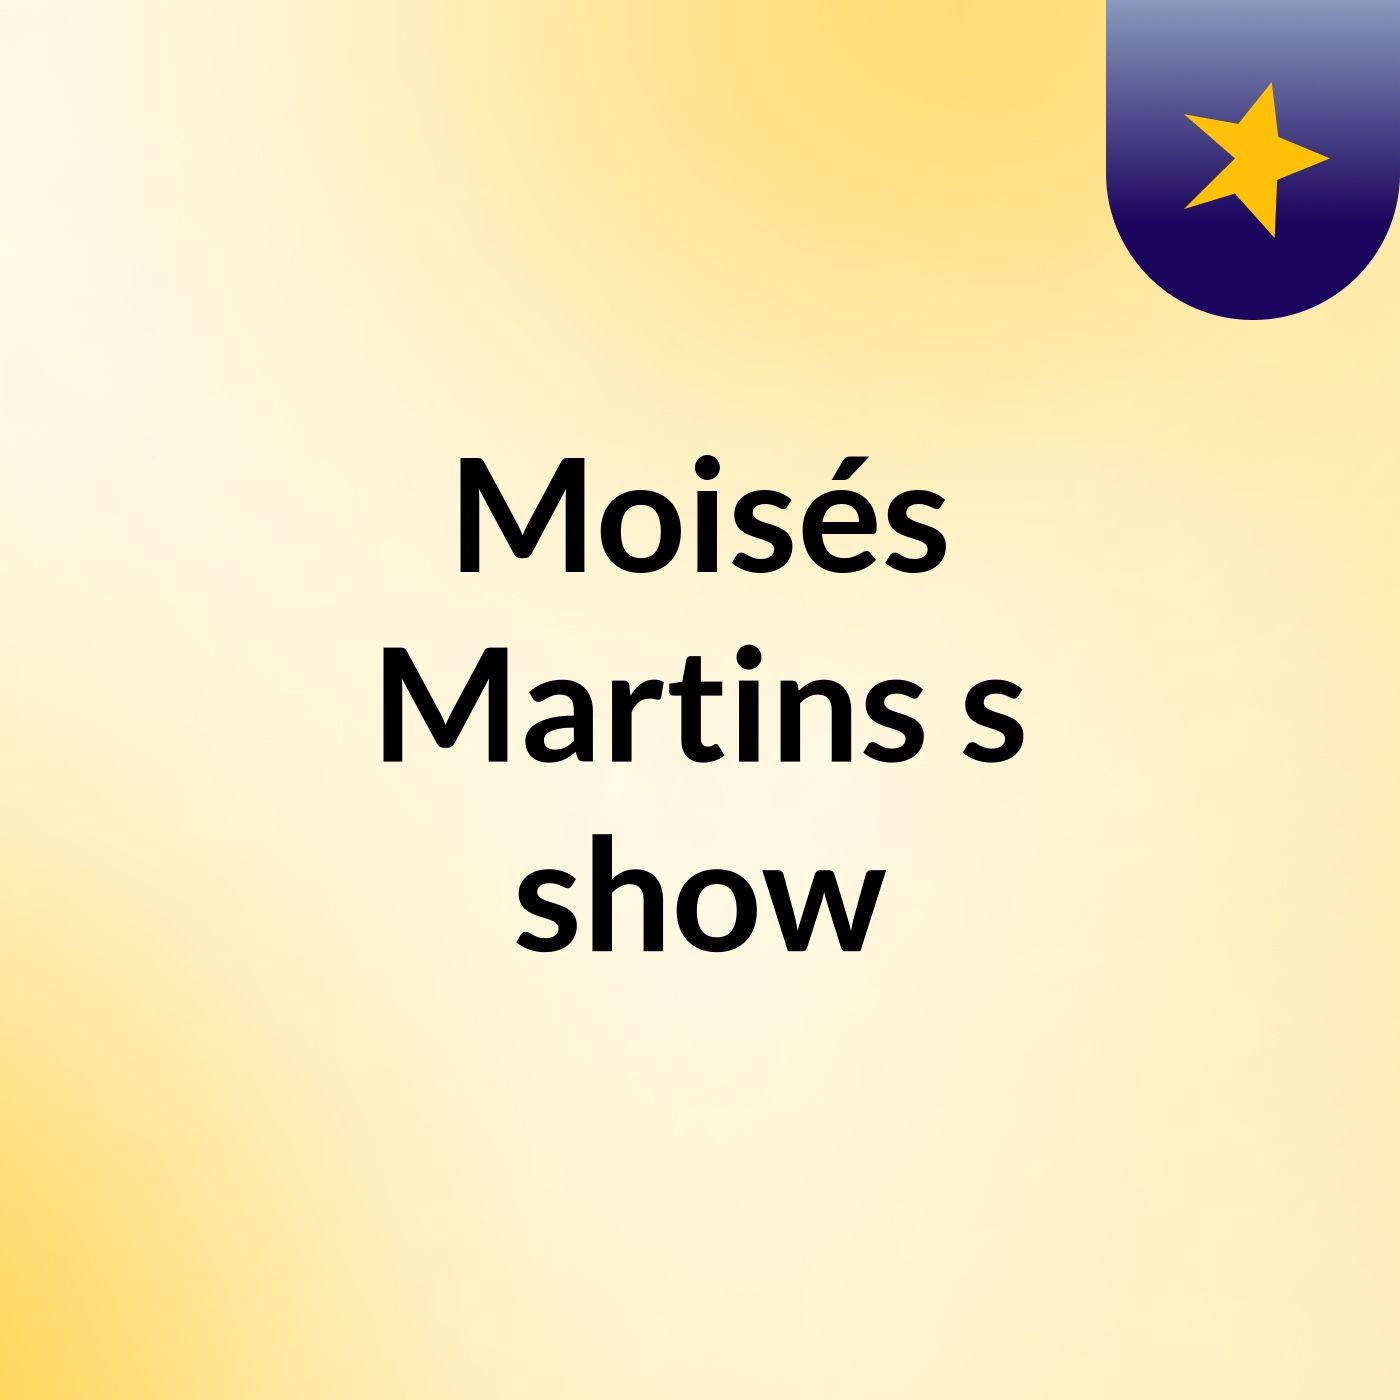 Moisés Martins's show